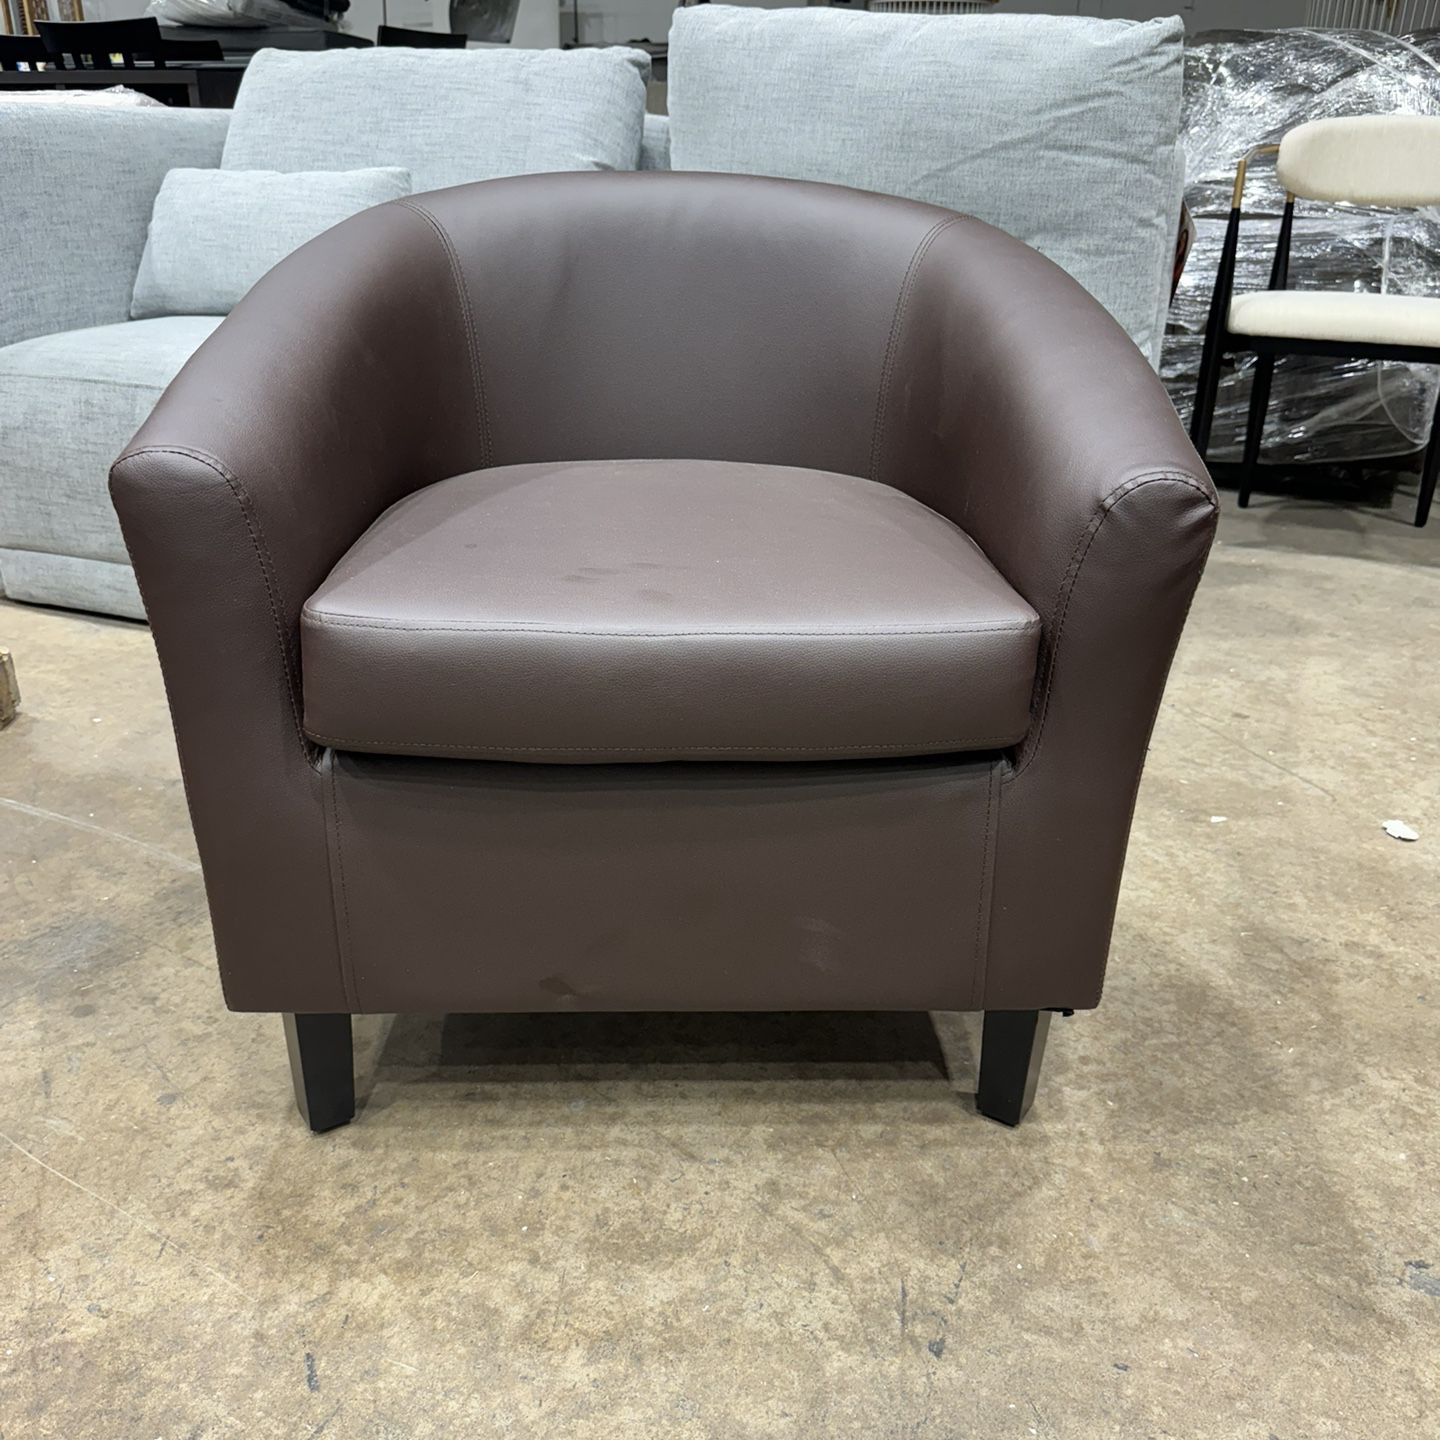 Brown Cushion Chair